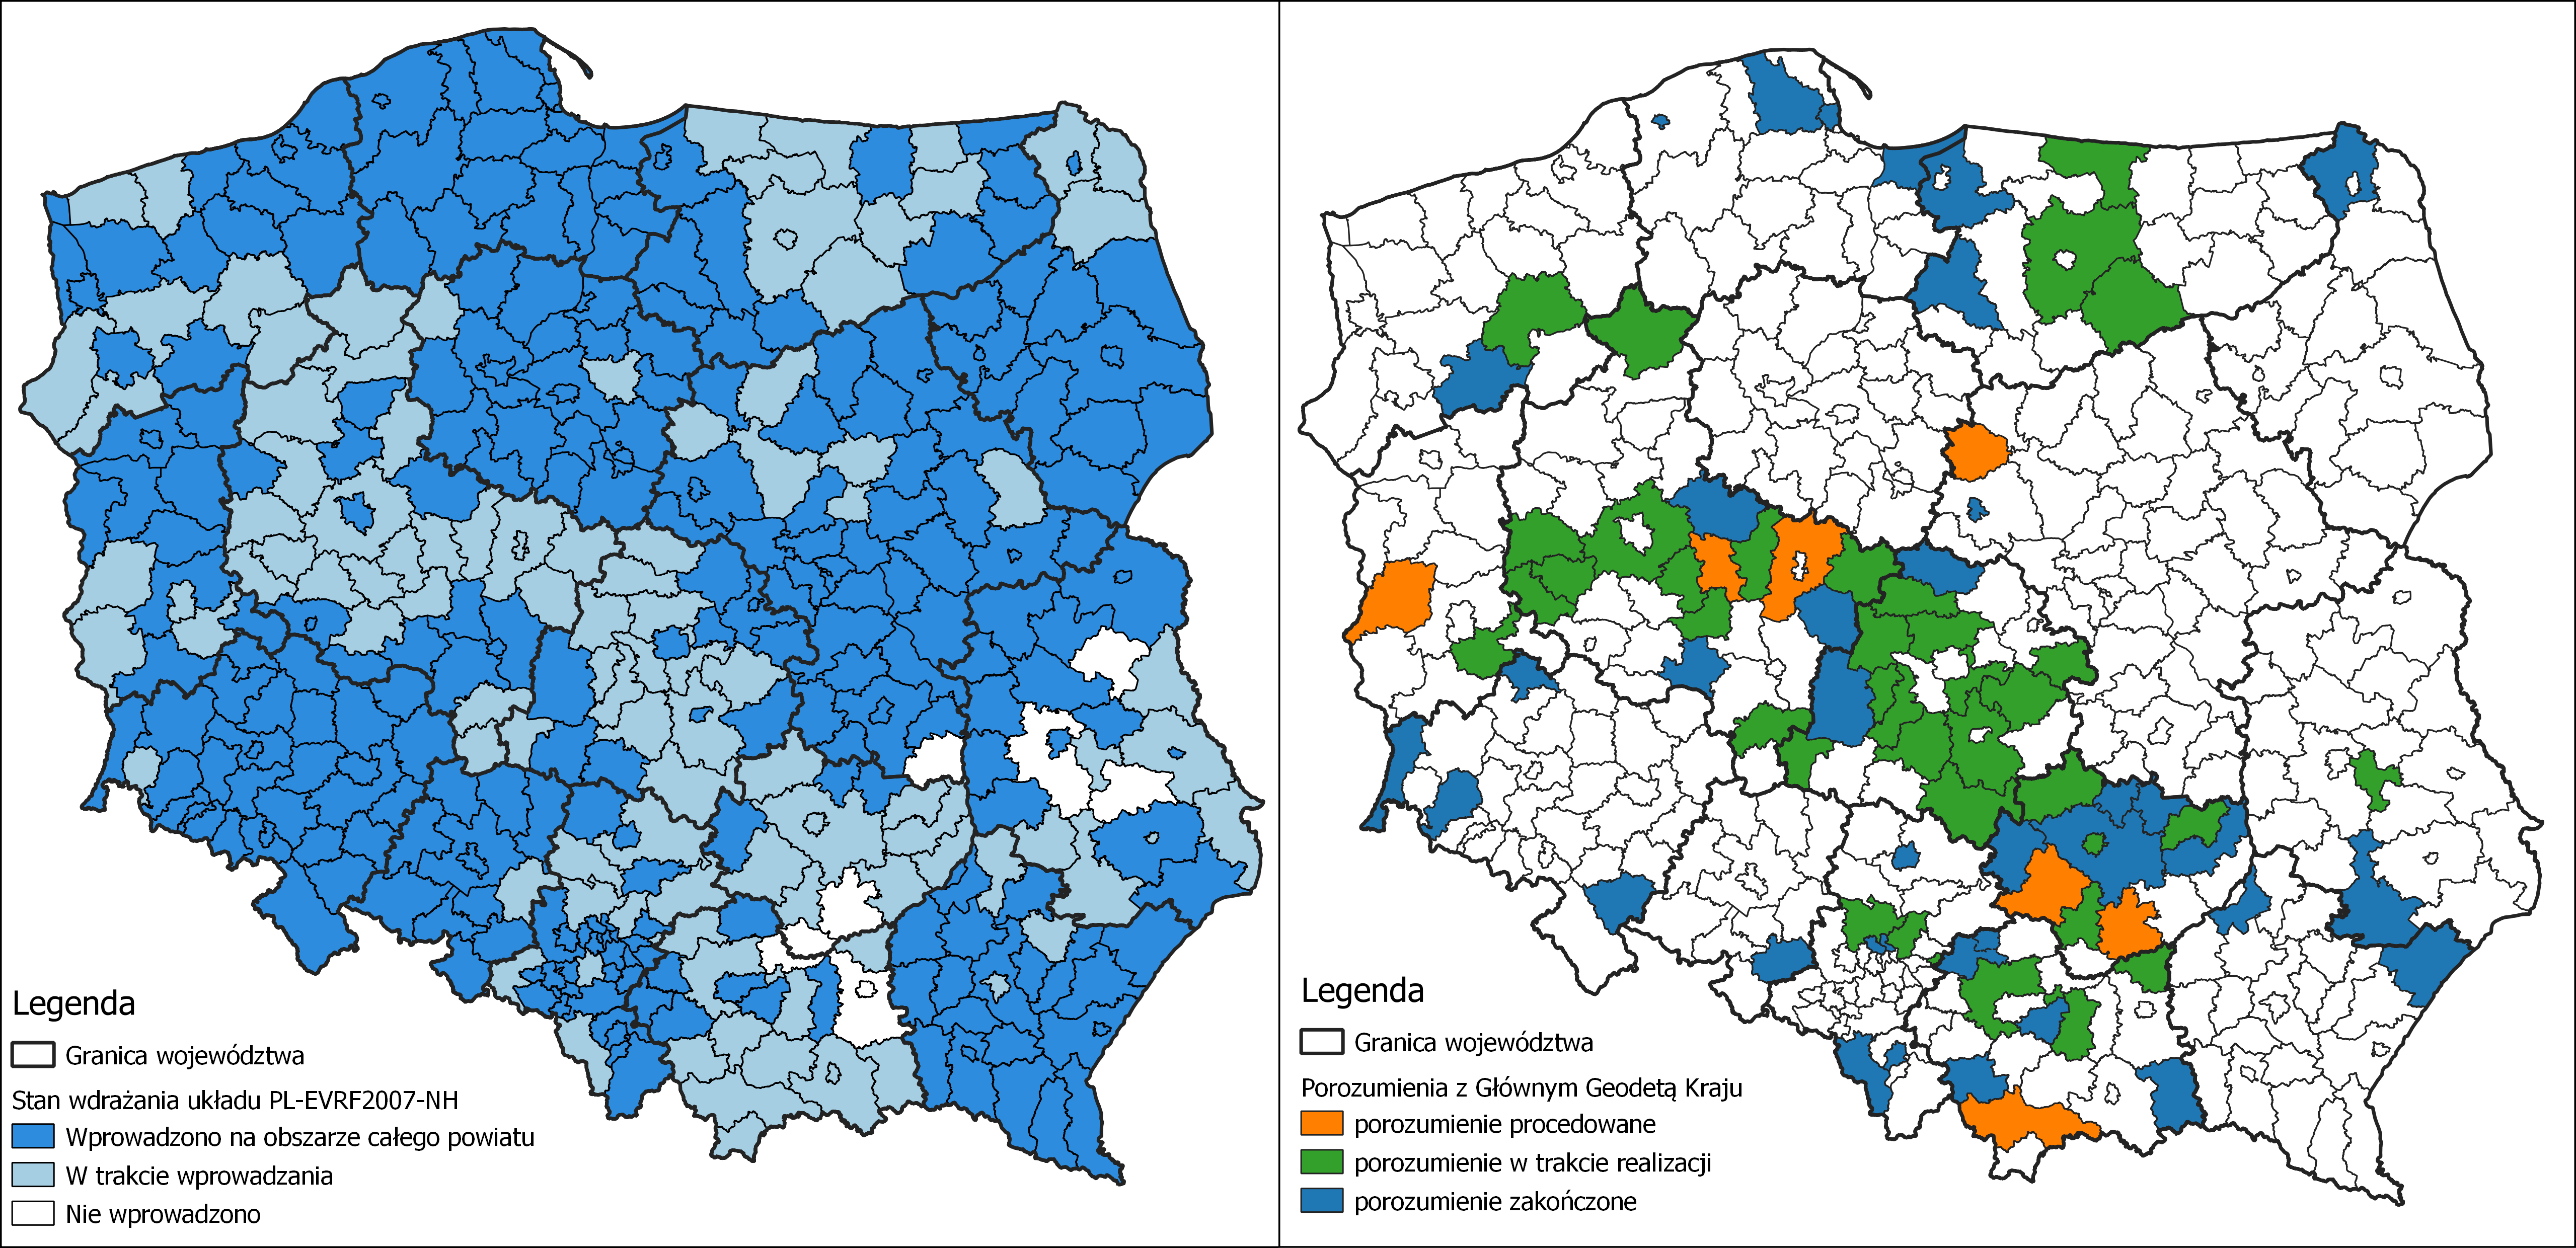 Ilustracja przedstawia zetawione obok siebie 2 mapy Polski z oznaczonym kolorystycznie: stanem wdrażania układu PL-EVRF2007-NH w powiatach po lewej stronie i powiatami, z którymi zawarte zostało porozumienie po prawej stronie.